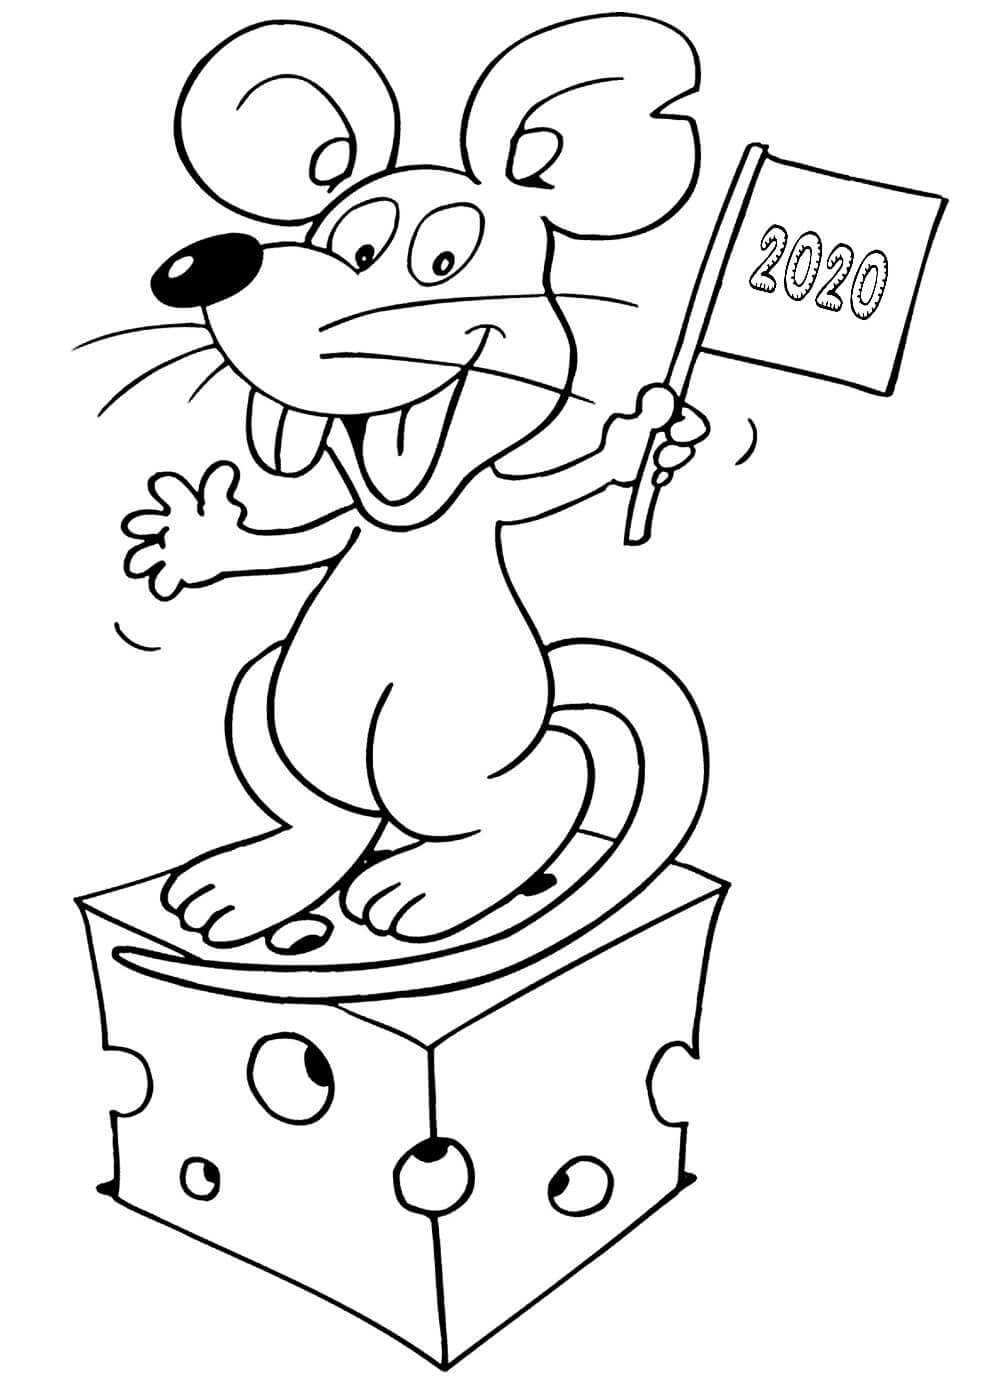 Год крысы рисунки. крыса рисунок карандашом. рисунок новогодняя крыса, белая крыса. смешные рисунки крыса. как нарисовать символ 2020 года - крысу. в статье подробно расписаны пошаговые инструкции для прорисовки символа 2020 года – крысы.